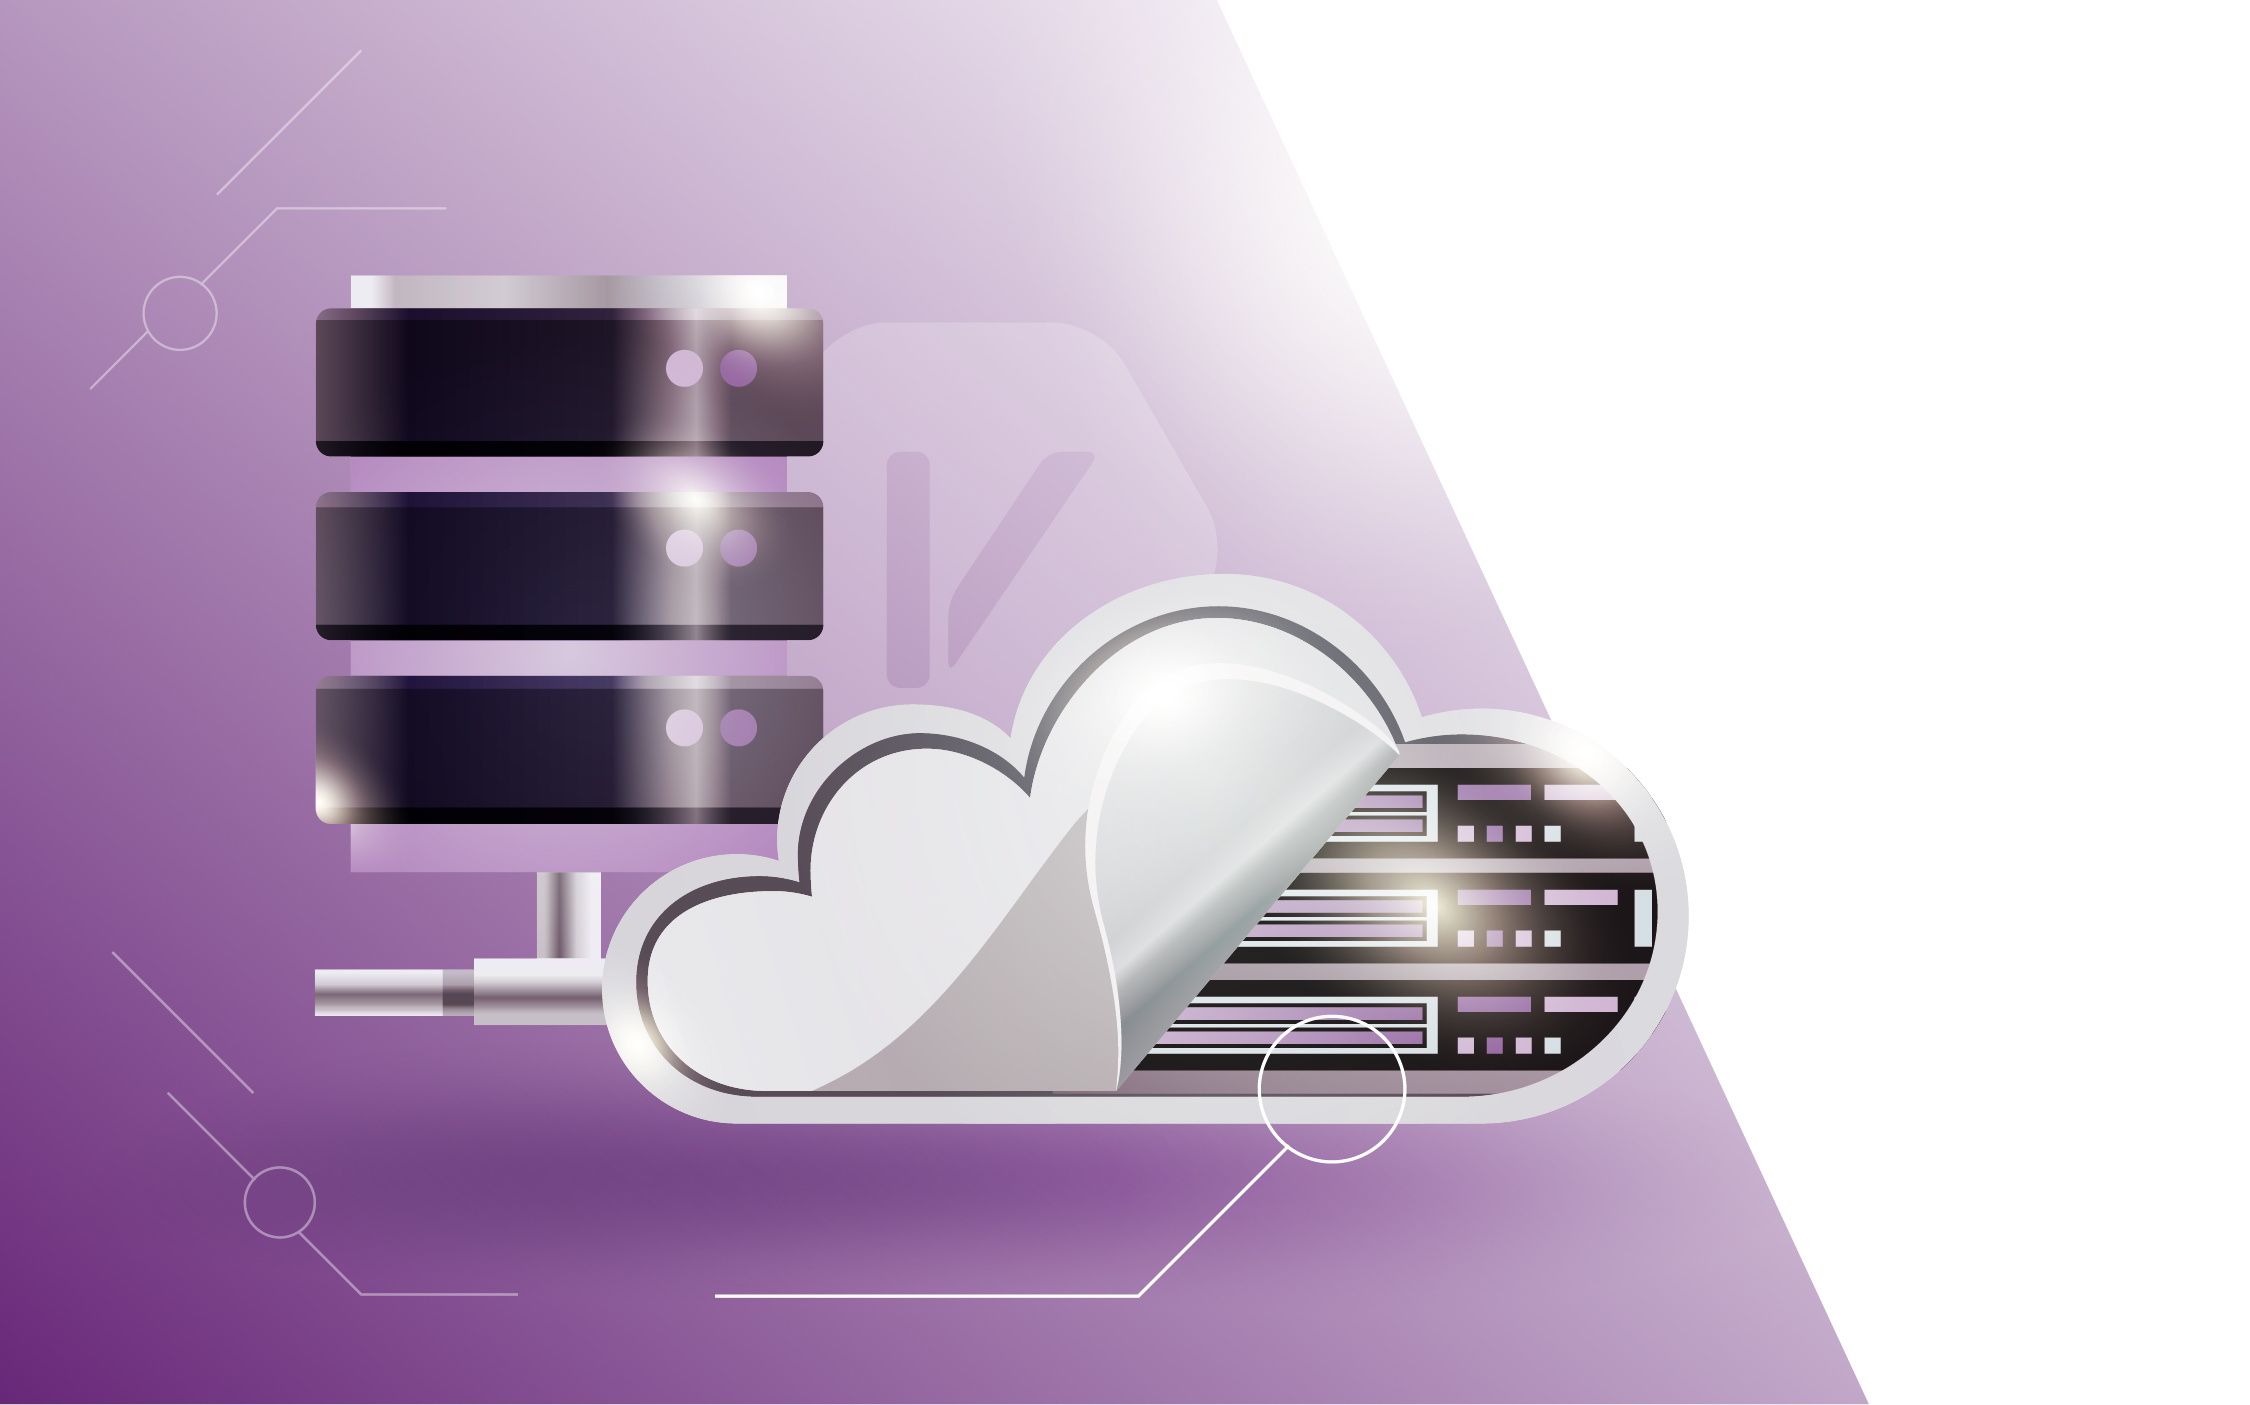 Internet vikings cloud hosting